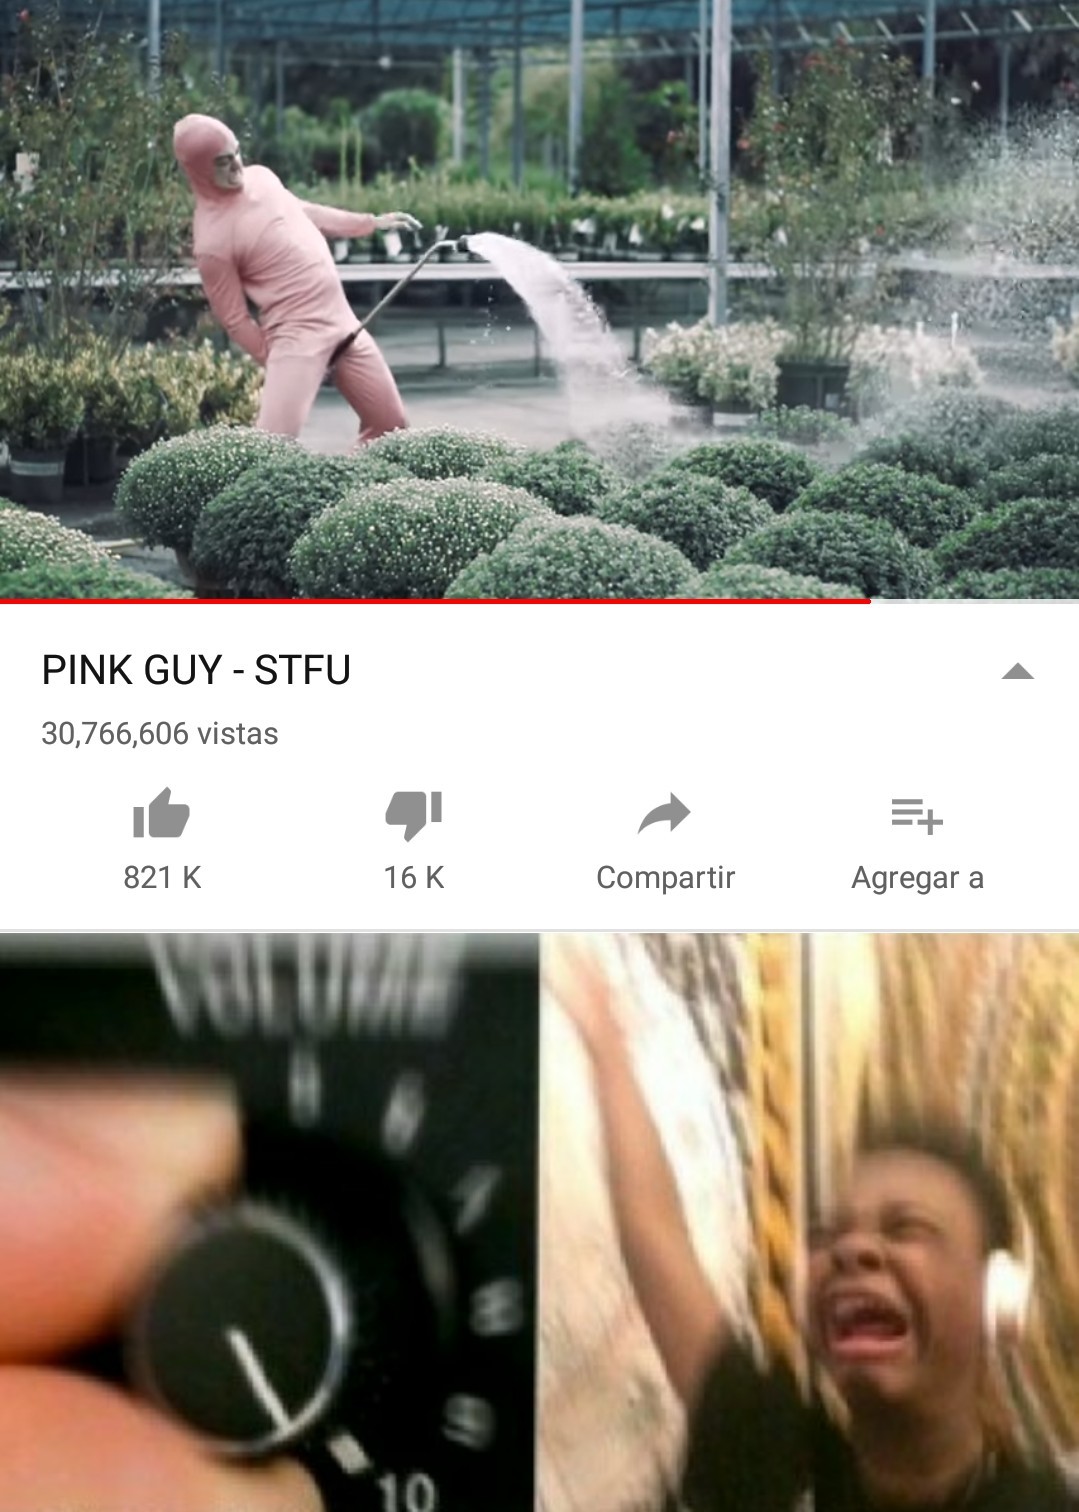 Rip Pink Guy (Original) - meme